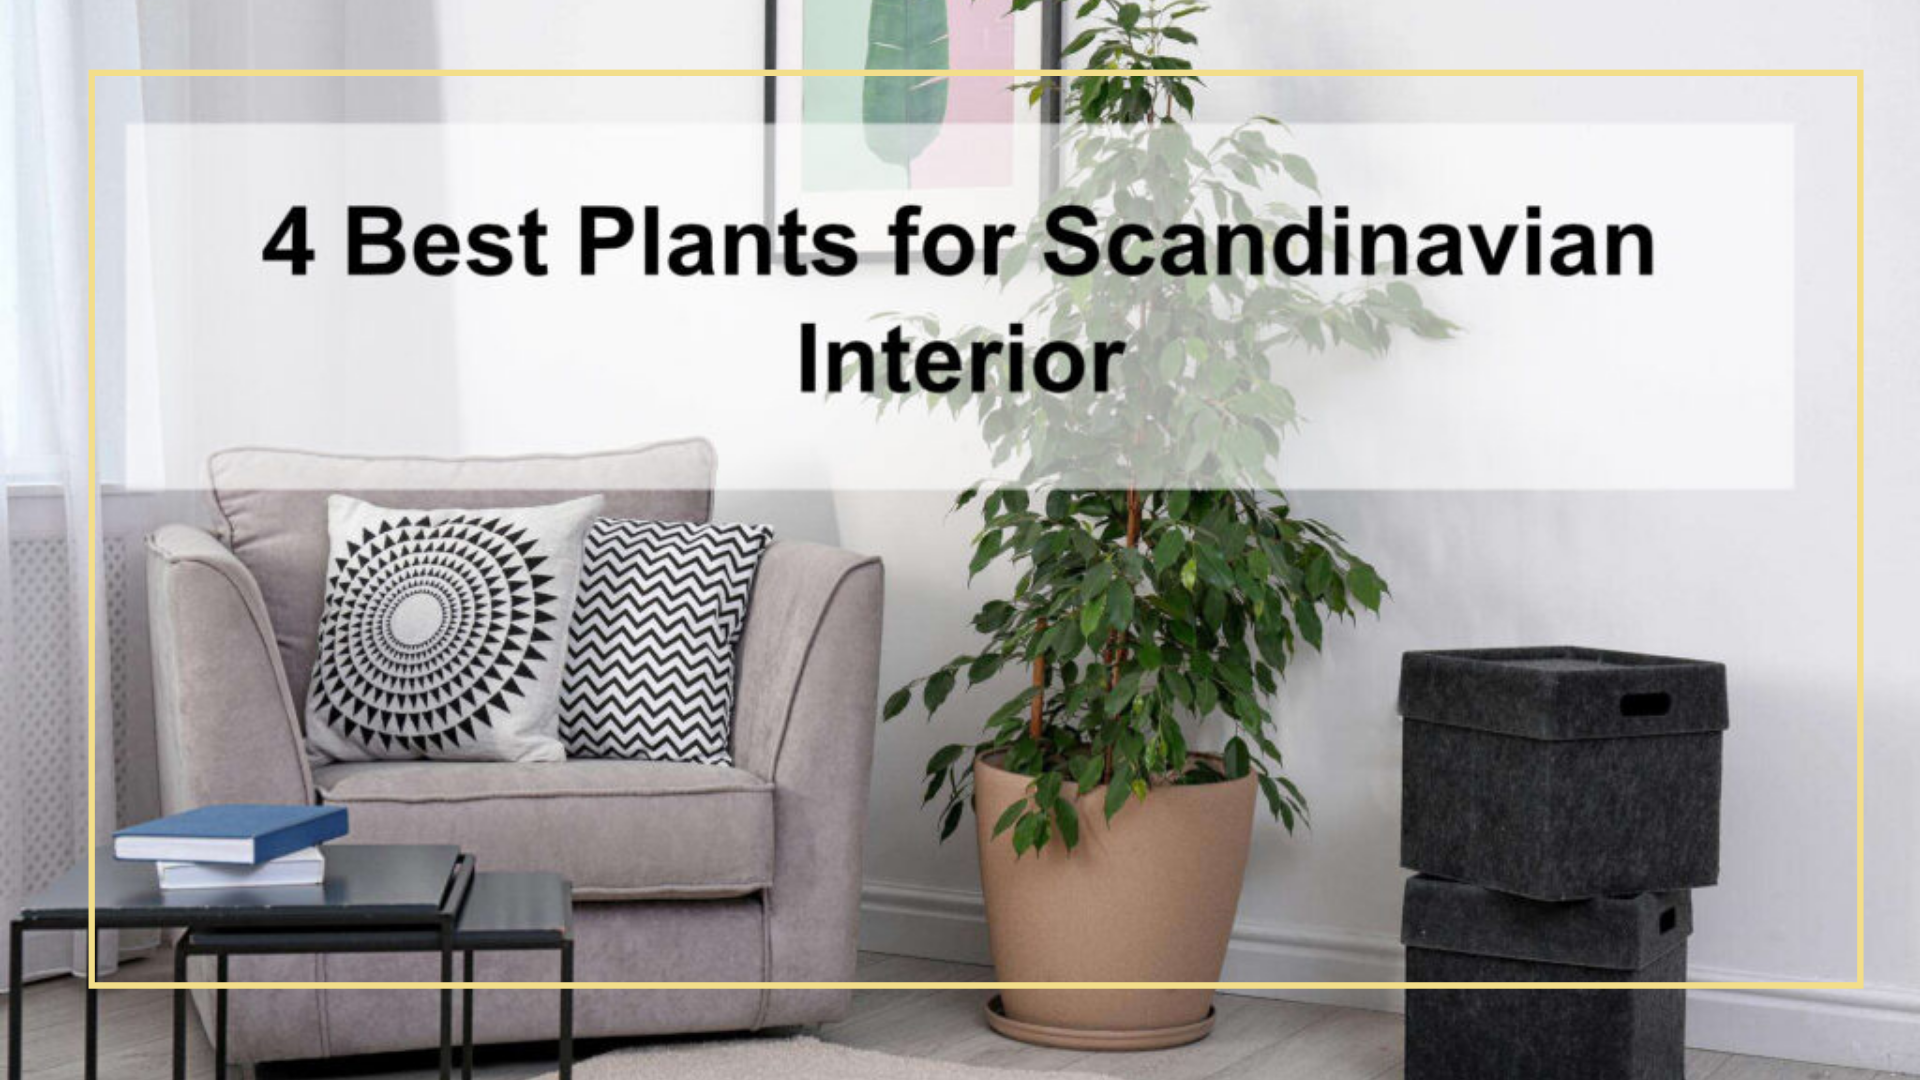 Scandinavian plants – 4 Best Plants for Scandinavian Interior